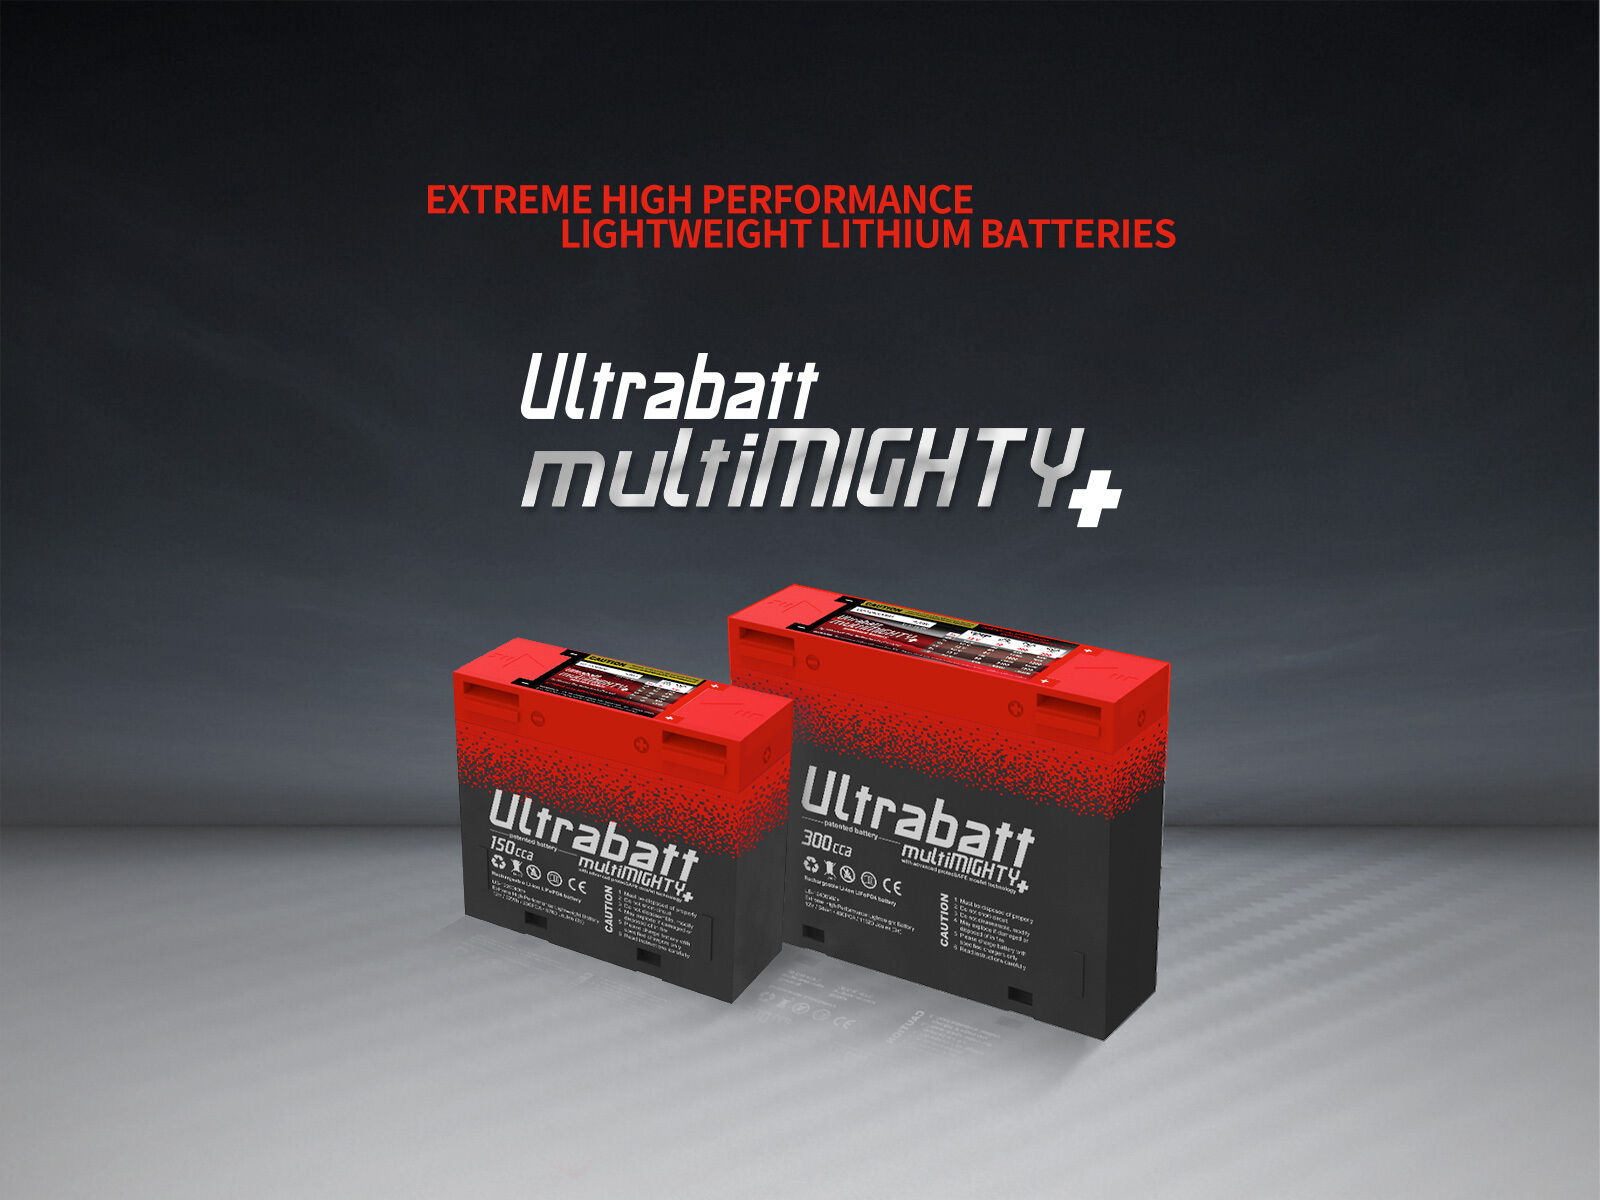 Ultrabatt Store